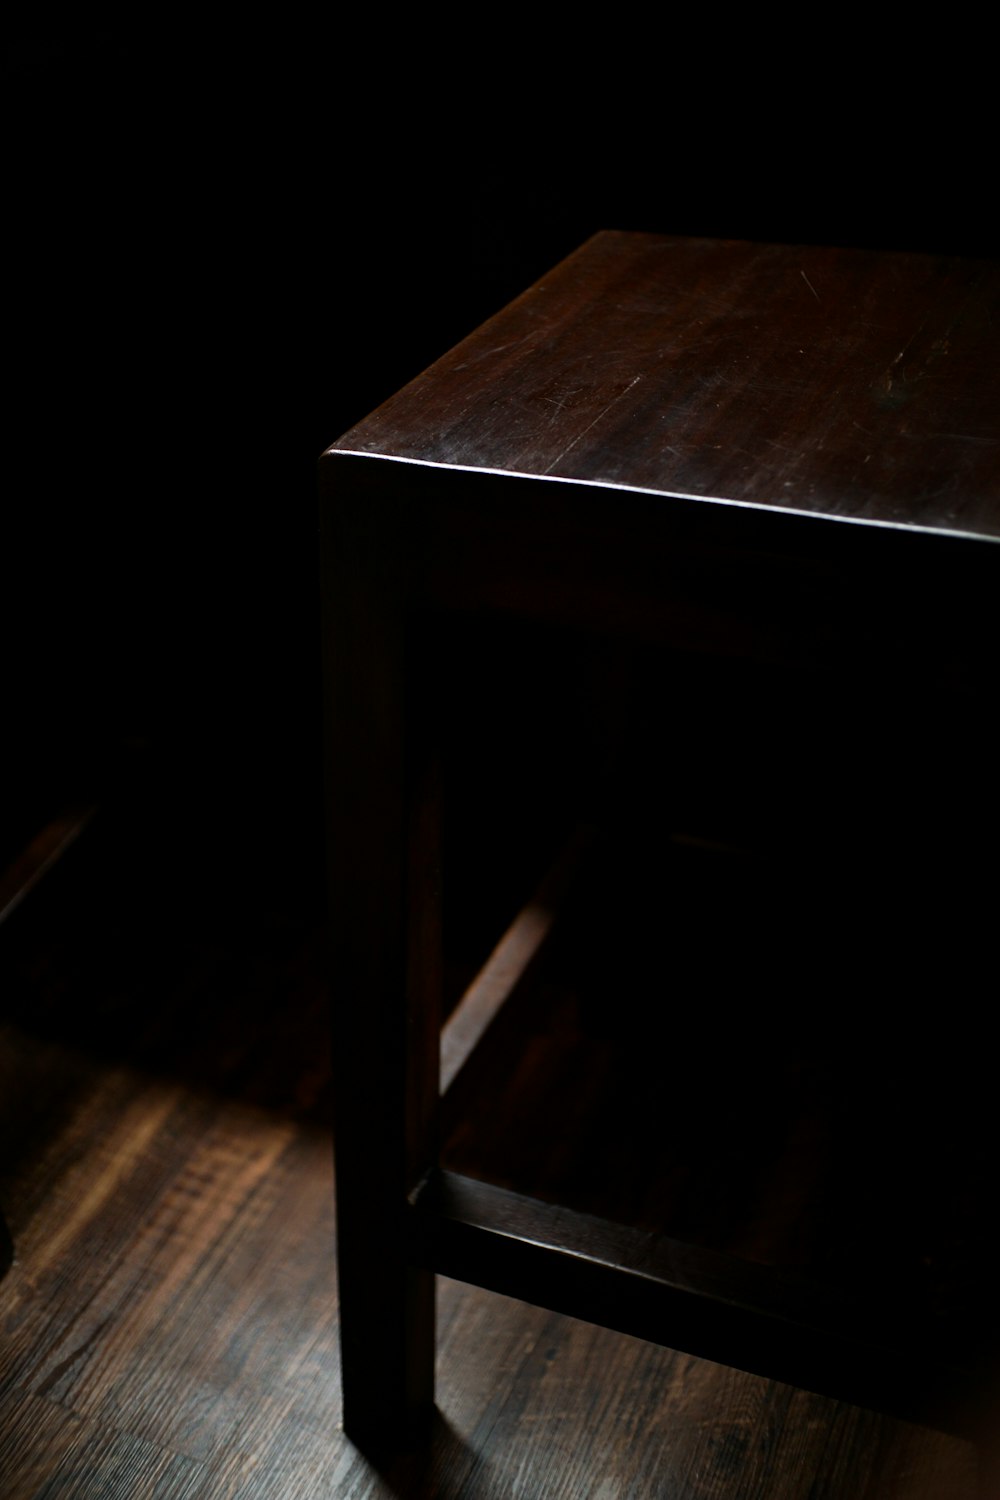 Có phải bạn đang muốn tìm kiếm một chiếc bàn đen với giá hợp lý để trang trí cho không gian nhà bạn? Thì đừng bỏ lỡ hình ảnh bàn đen 30k+ mà chúng tôi giới thiệu! Hình ảnh này sẽ cho bạn cái nhìn rõ nét về chiếc bàn với thiết kế độc đáo, phù hợp cho nhiều phong cách trang trí nhà. Hãy xem và cảm nhận nhé!